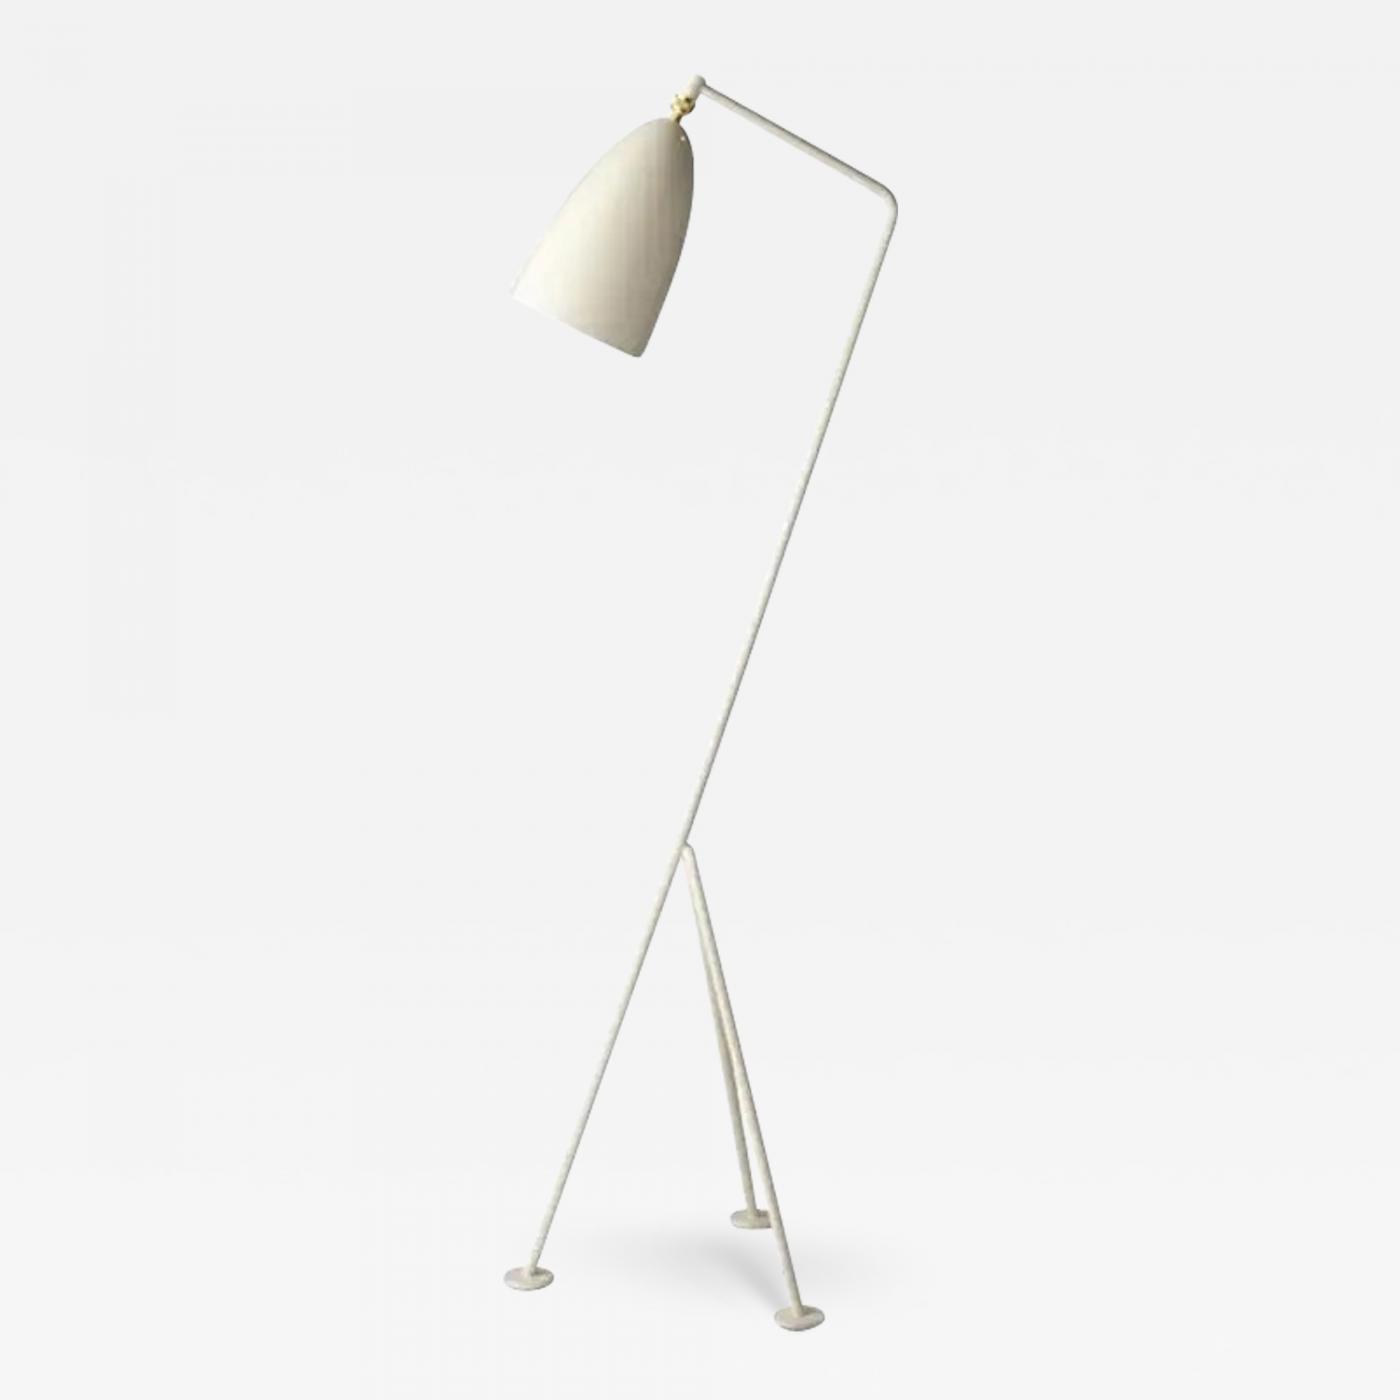 Gubi - Greta Magnusson Gubi One Grasshopper Oyster White Floor Lamp  Mid-Century Modern